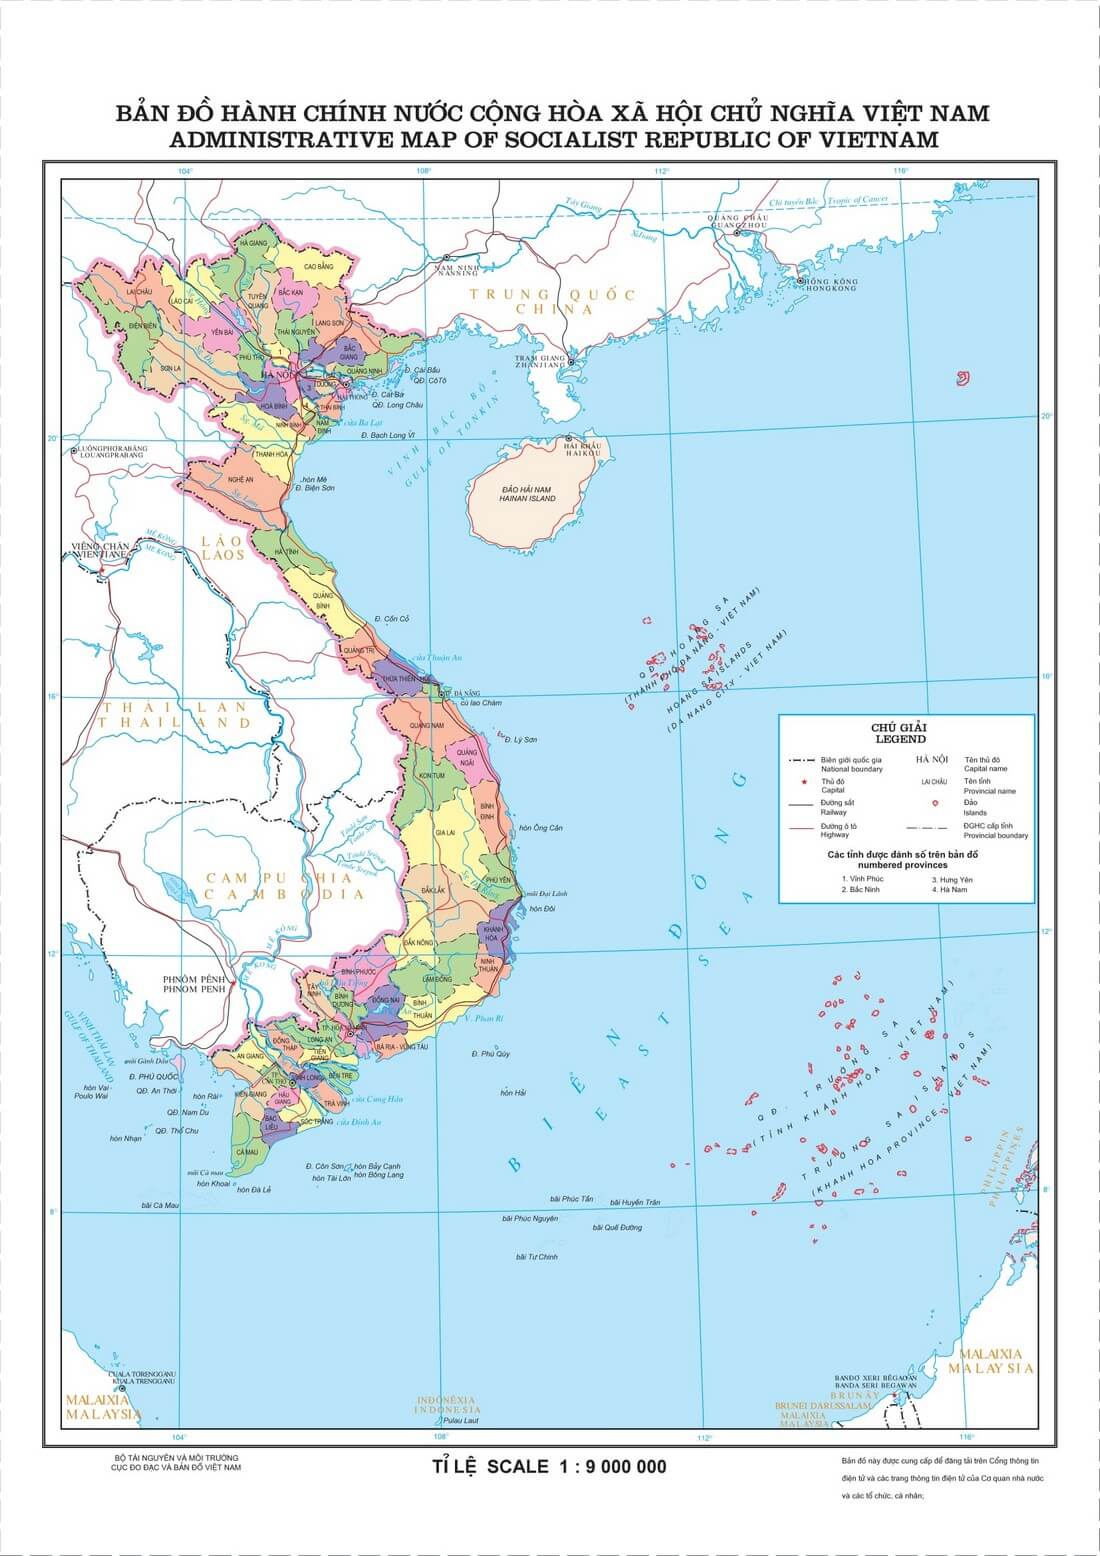 Bản đồ hành chính Việt Nam 2022 đã được cập nhật đầy đủ với tất cả các tỉnh thành, huyện, xã, và địa danh mới nhất. Hình ảnh này sẽ giúp bạn tìm hiểu về các vùng đất và môi trường xung quanh Việt Nam.